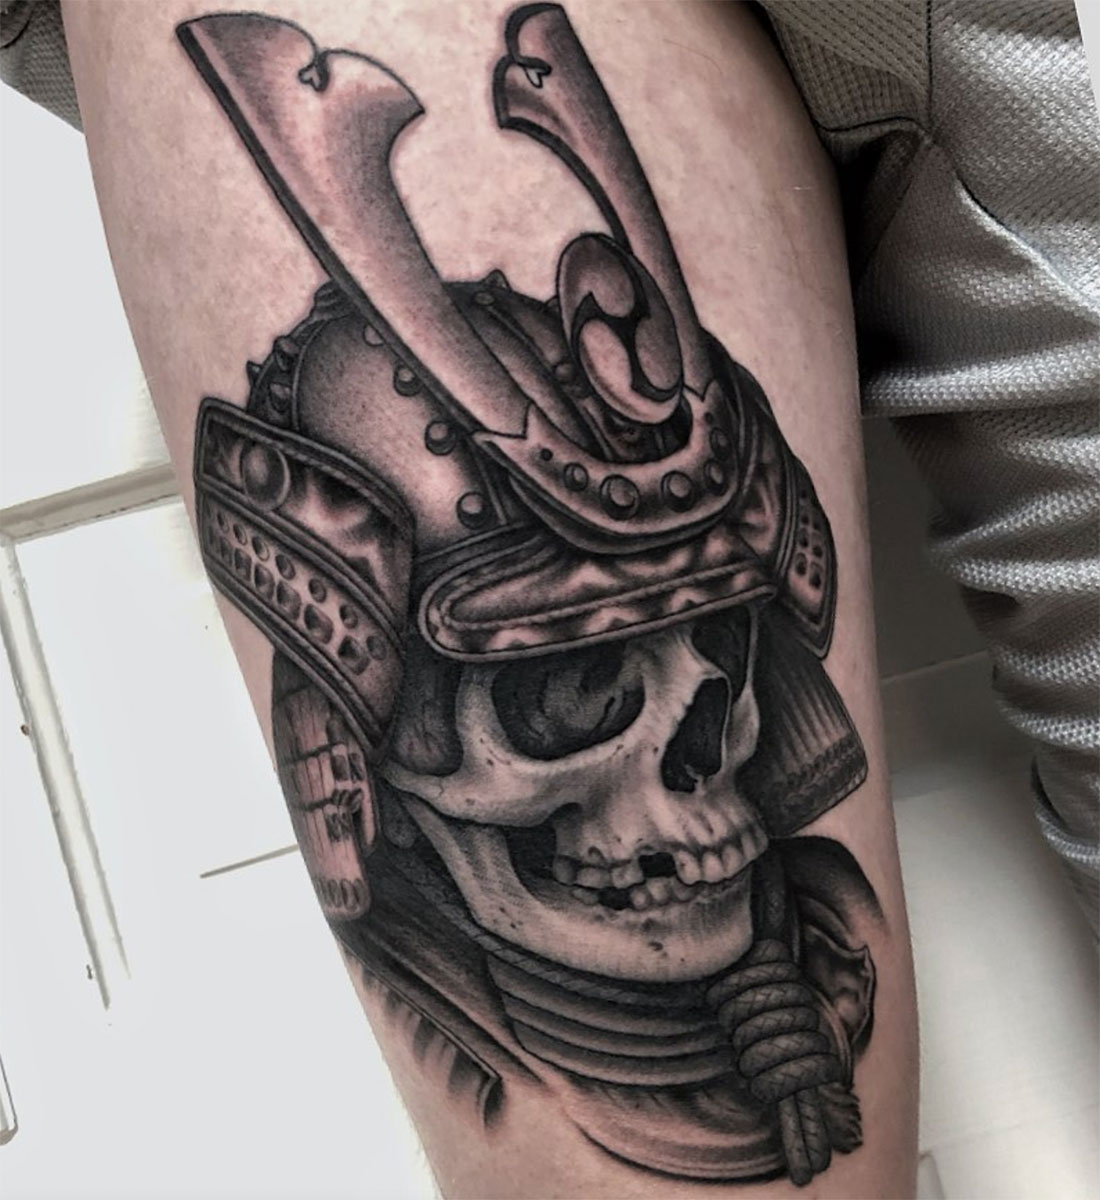 Bryan Humphries - Tattoo Artist Kings Avenue Tattoo Durham, NC